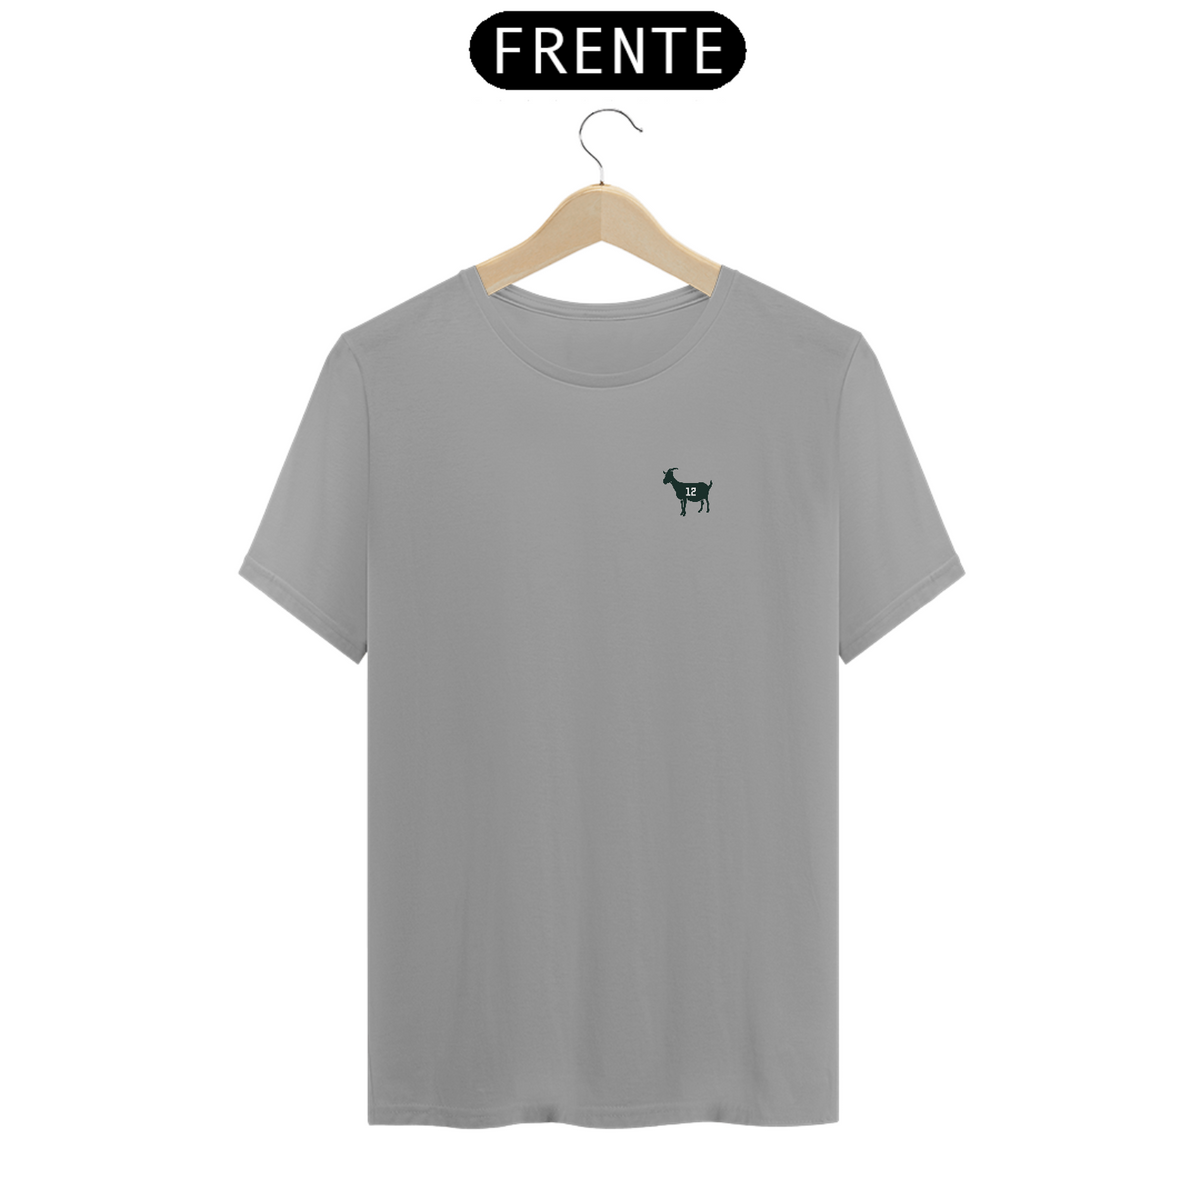 Nome do produto: Camiseta Quality Goat